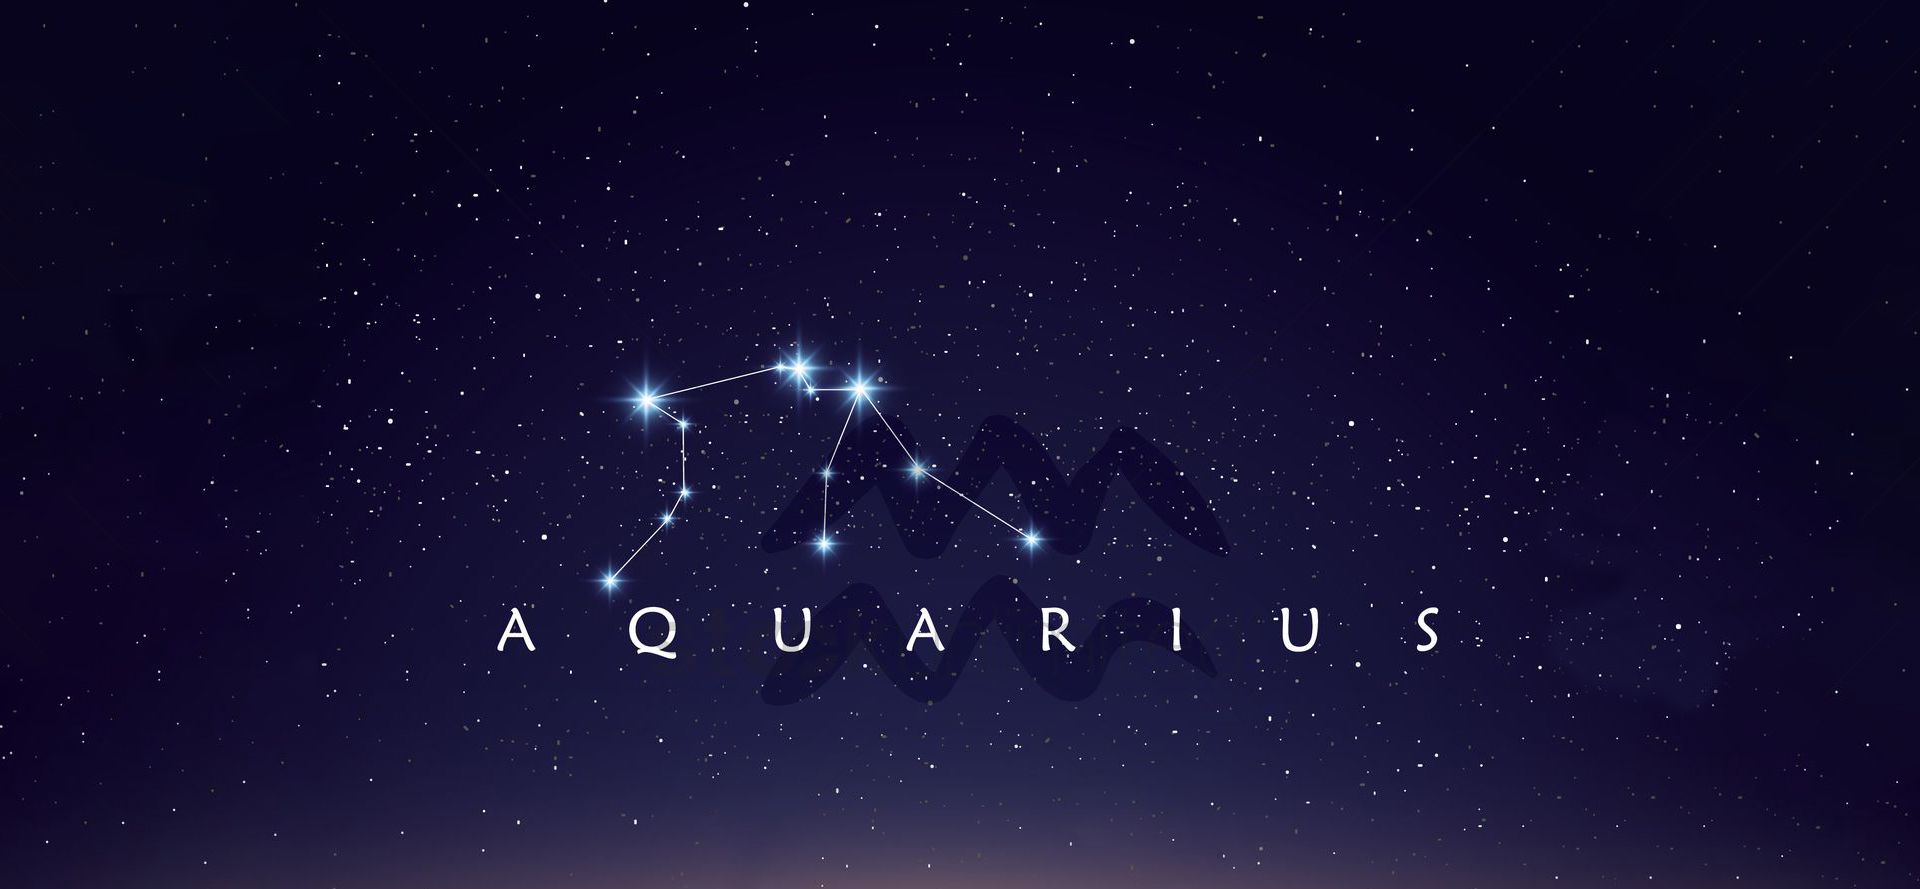 Aquarius sign and constellation.